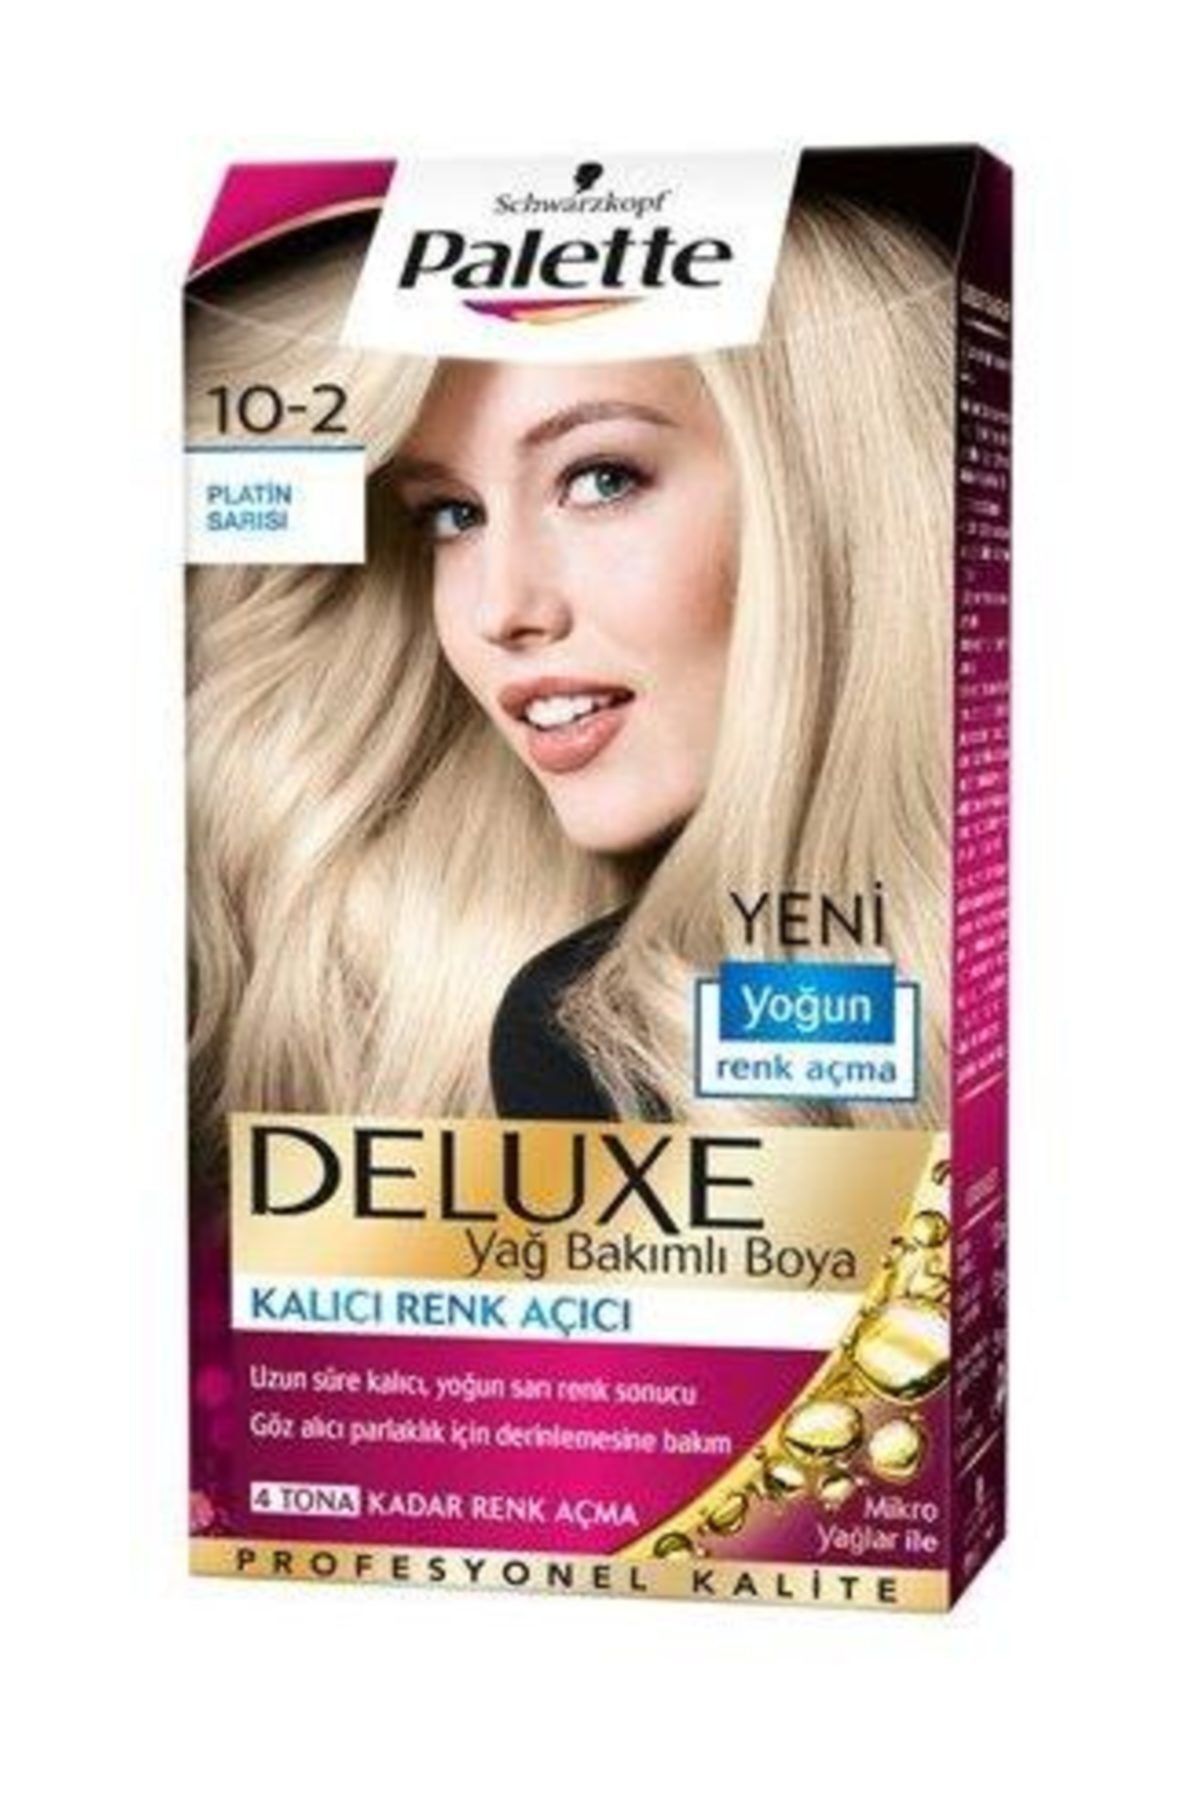 Palette Deluxe 10-2 Platin Sarı Saç Boyası 50 ml